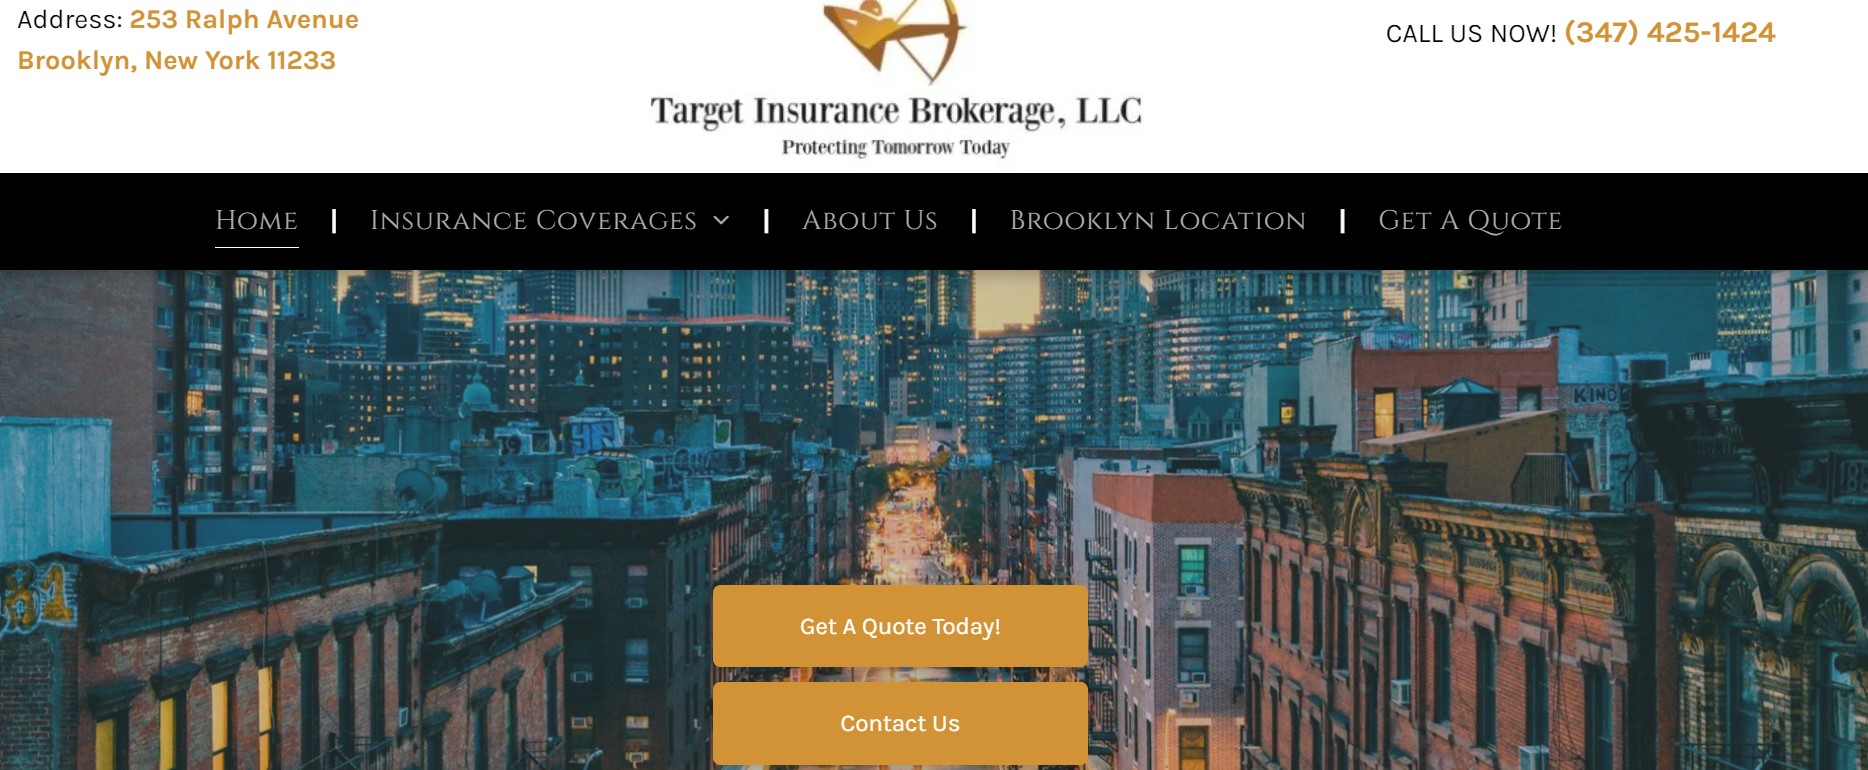 Target Insurance Brokerage, LLC